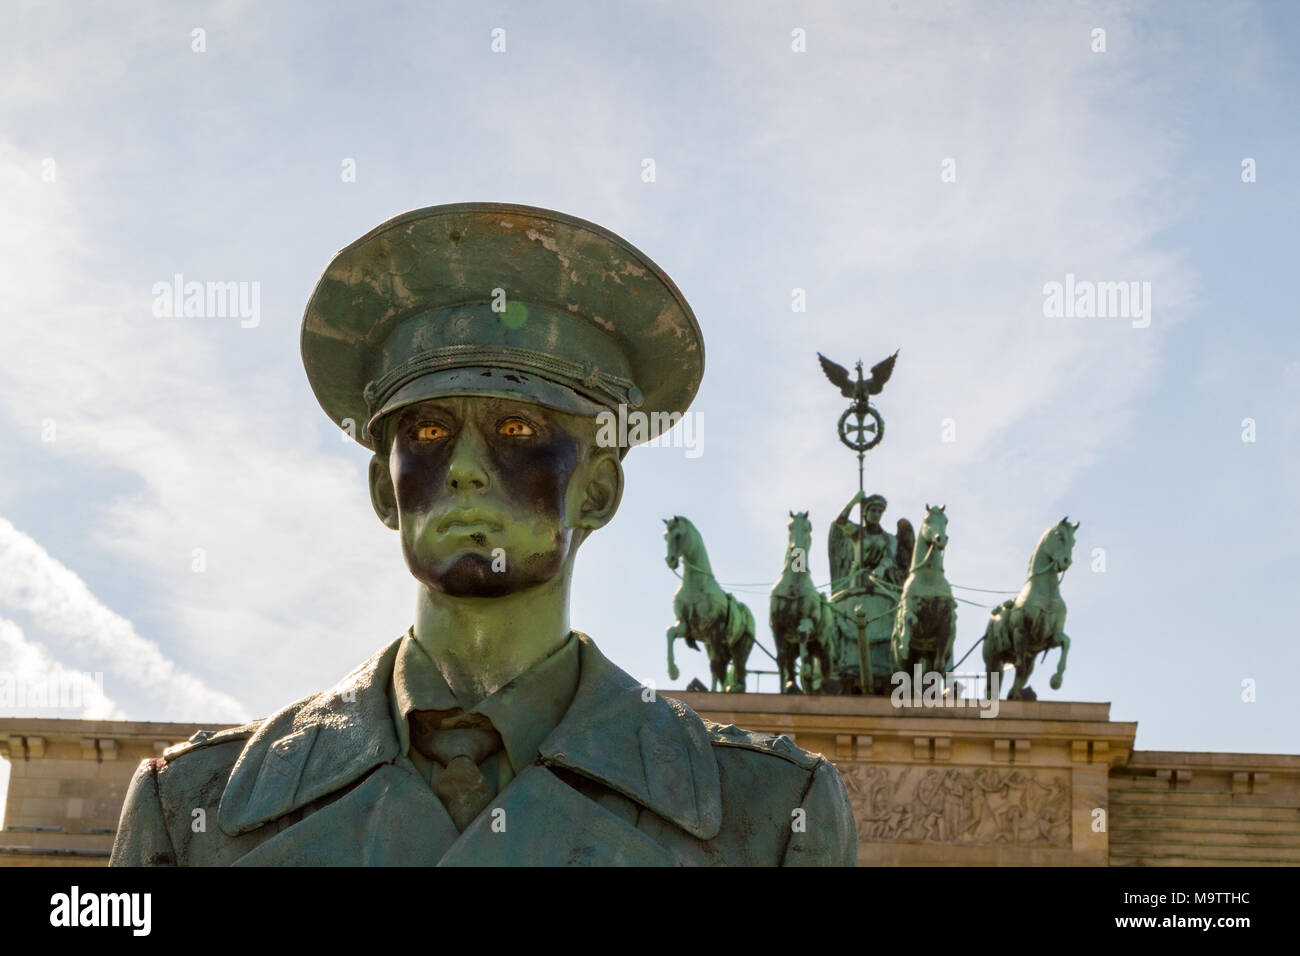 Una bambola realistica di un soldato tedesco di fronte al Brandenburger Tor su Platz des 18 März a Berlino, Germania. Foto Stock